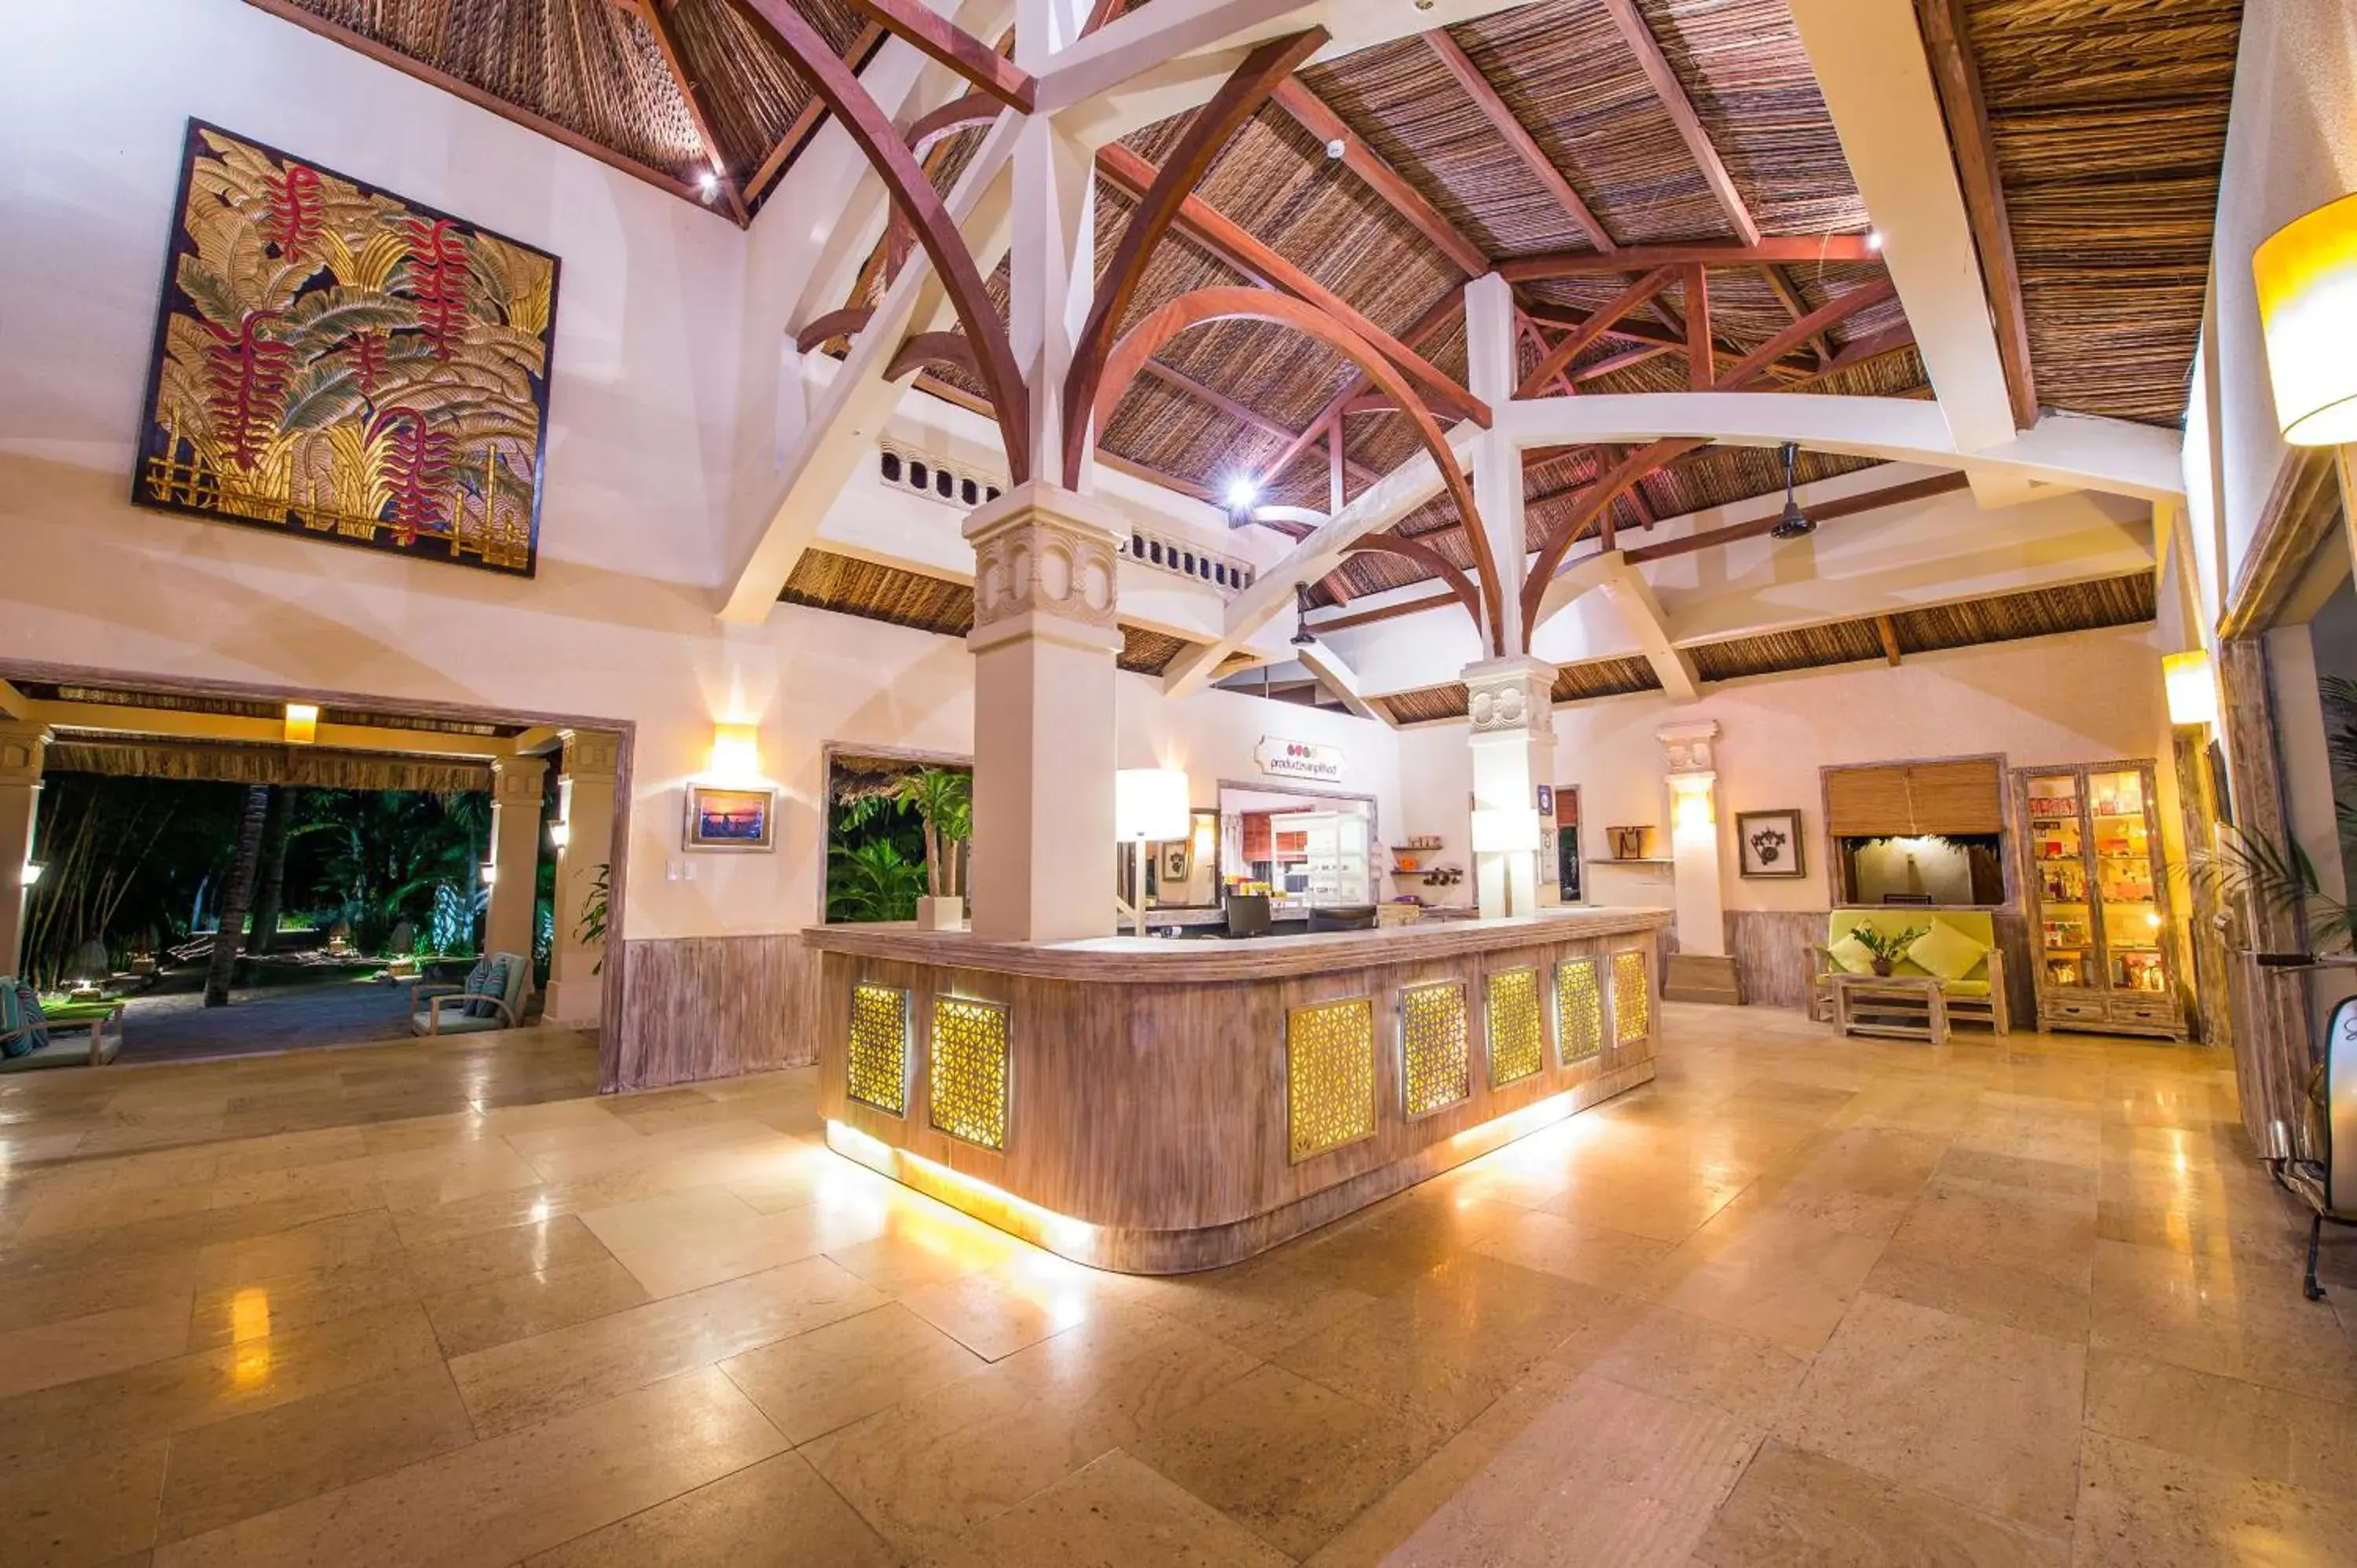 Lobby or reception, Lobby/Reception in Sailing Club Resort Mui Ne